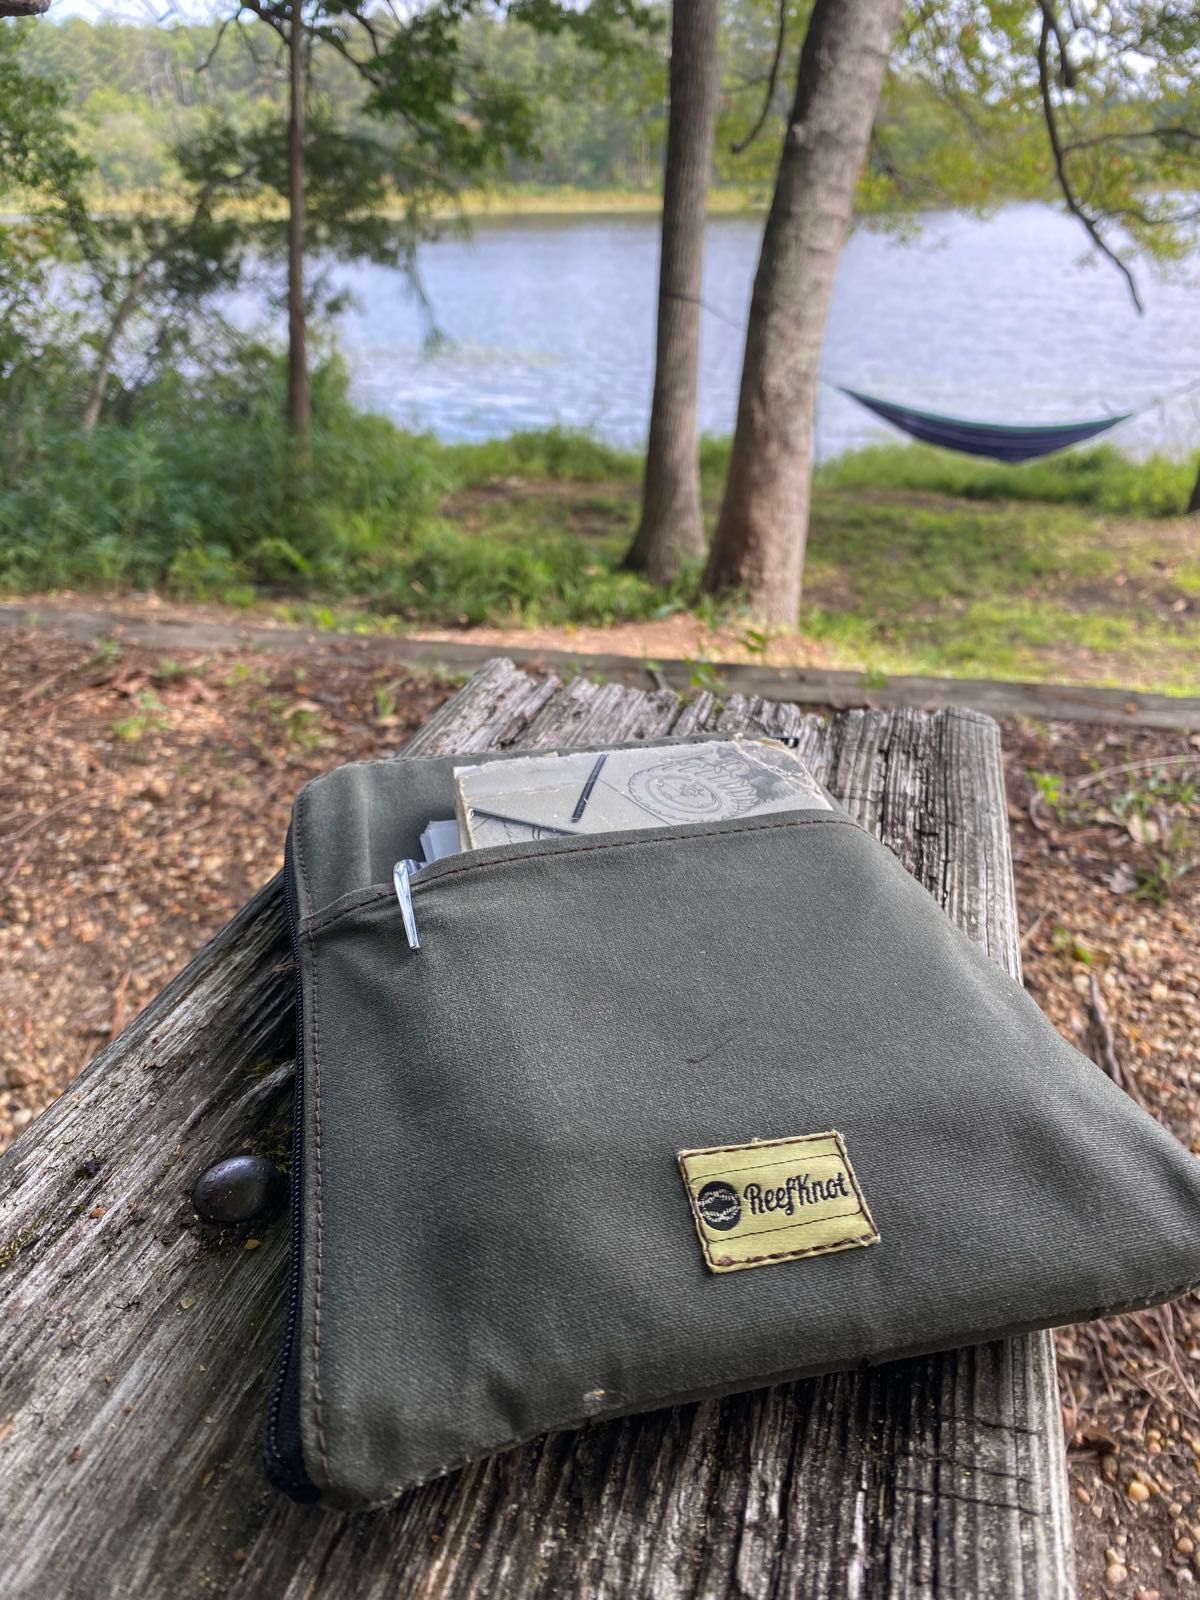 Journaling time on Paynes lake in Alabama